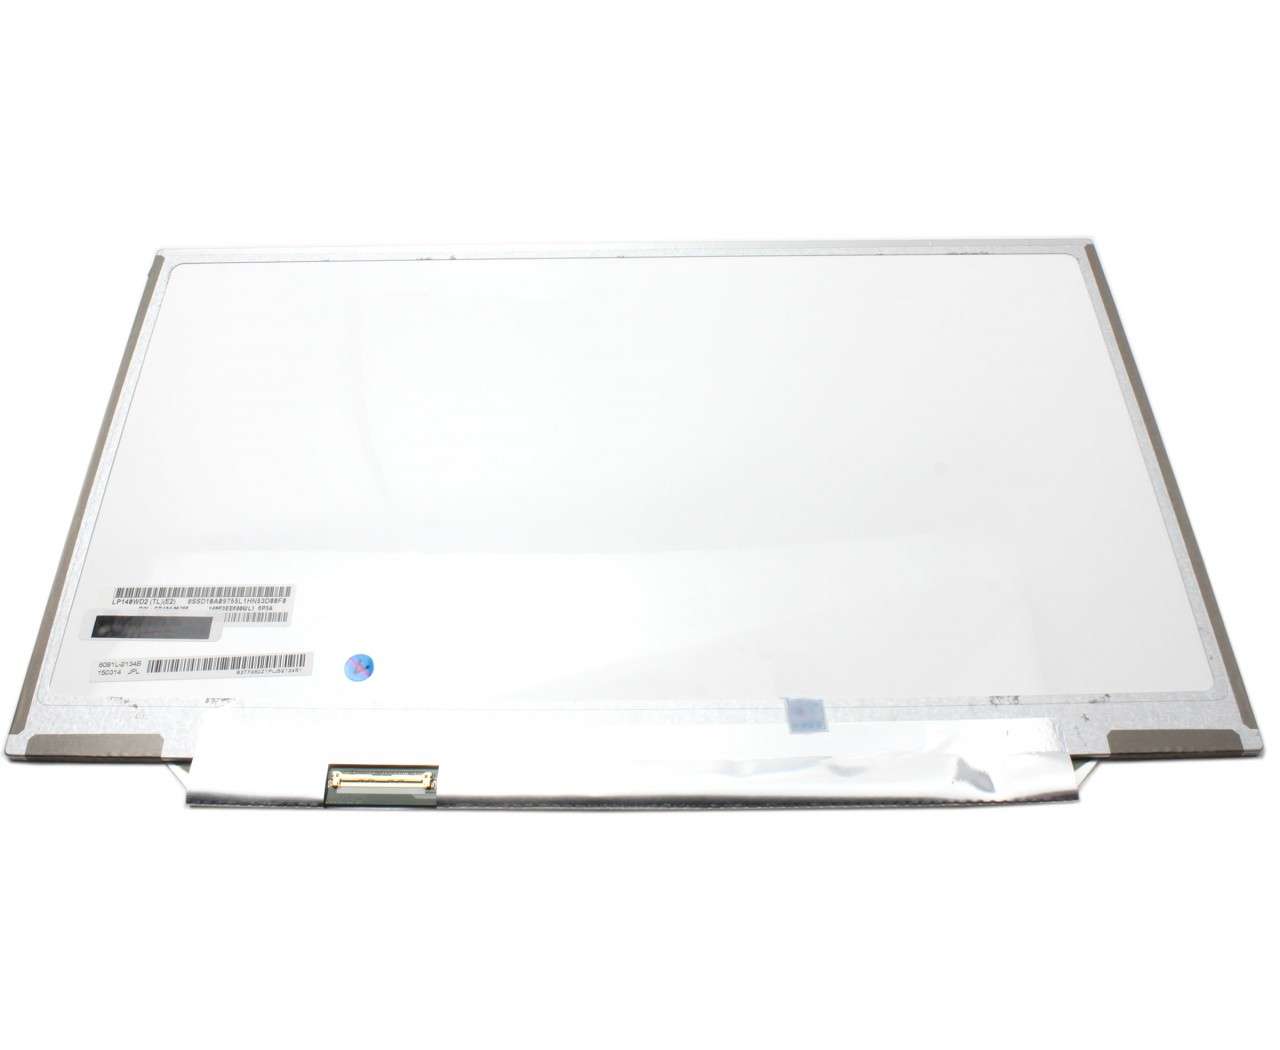 Display laptop LG LP140WD2 (TL)(E2) Ecran 14.0 1600×900 40 pini LVDS LG